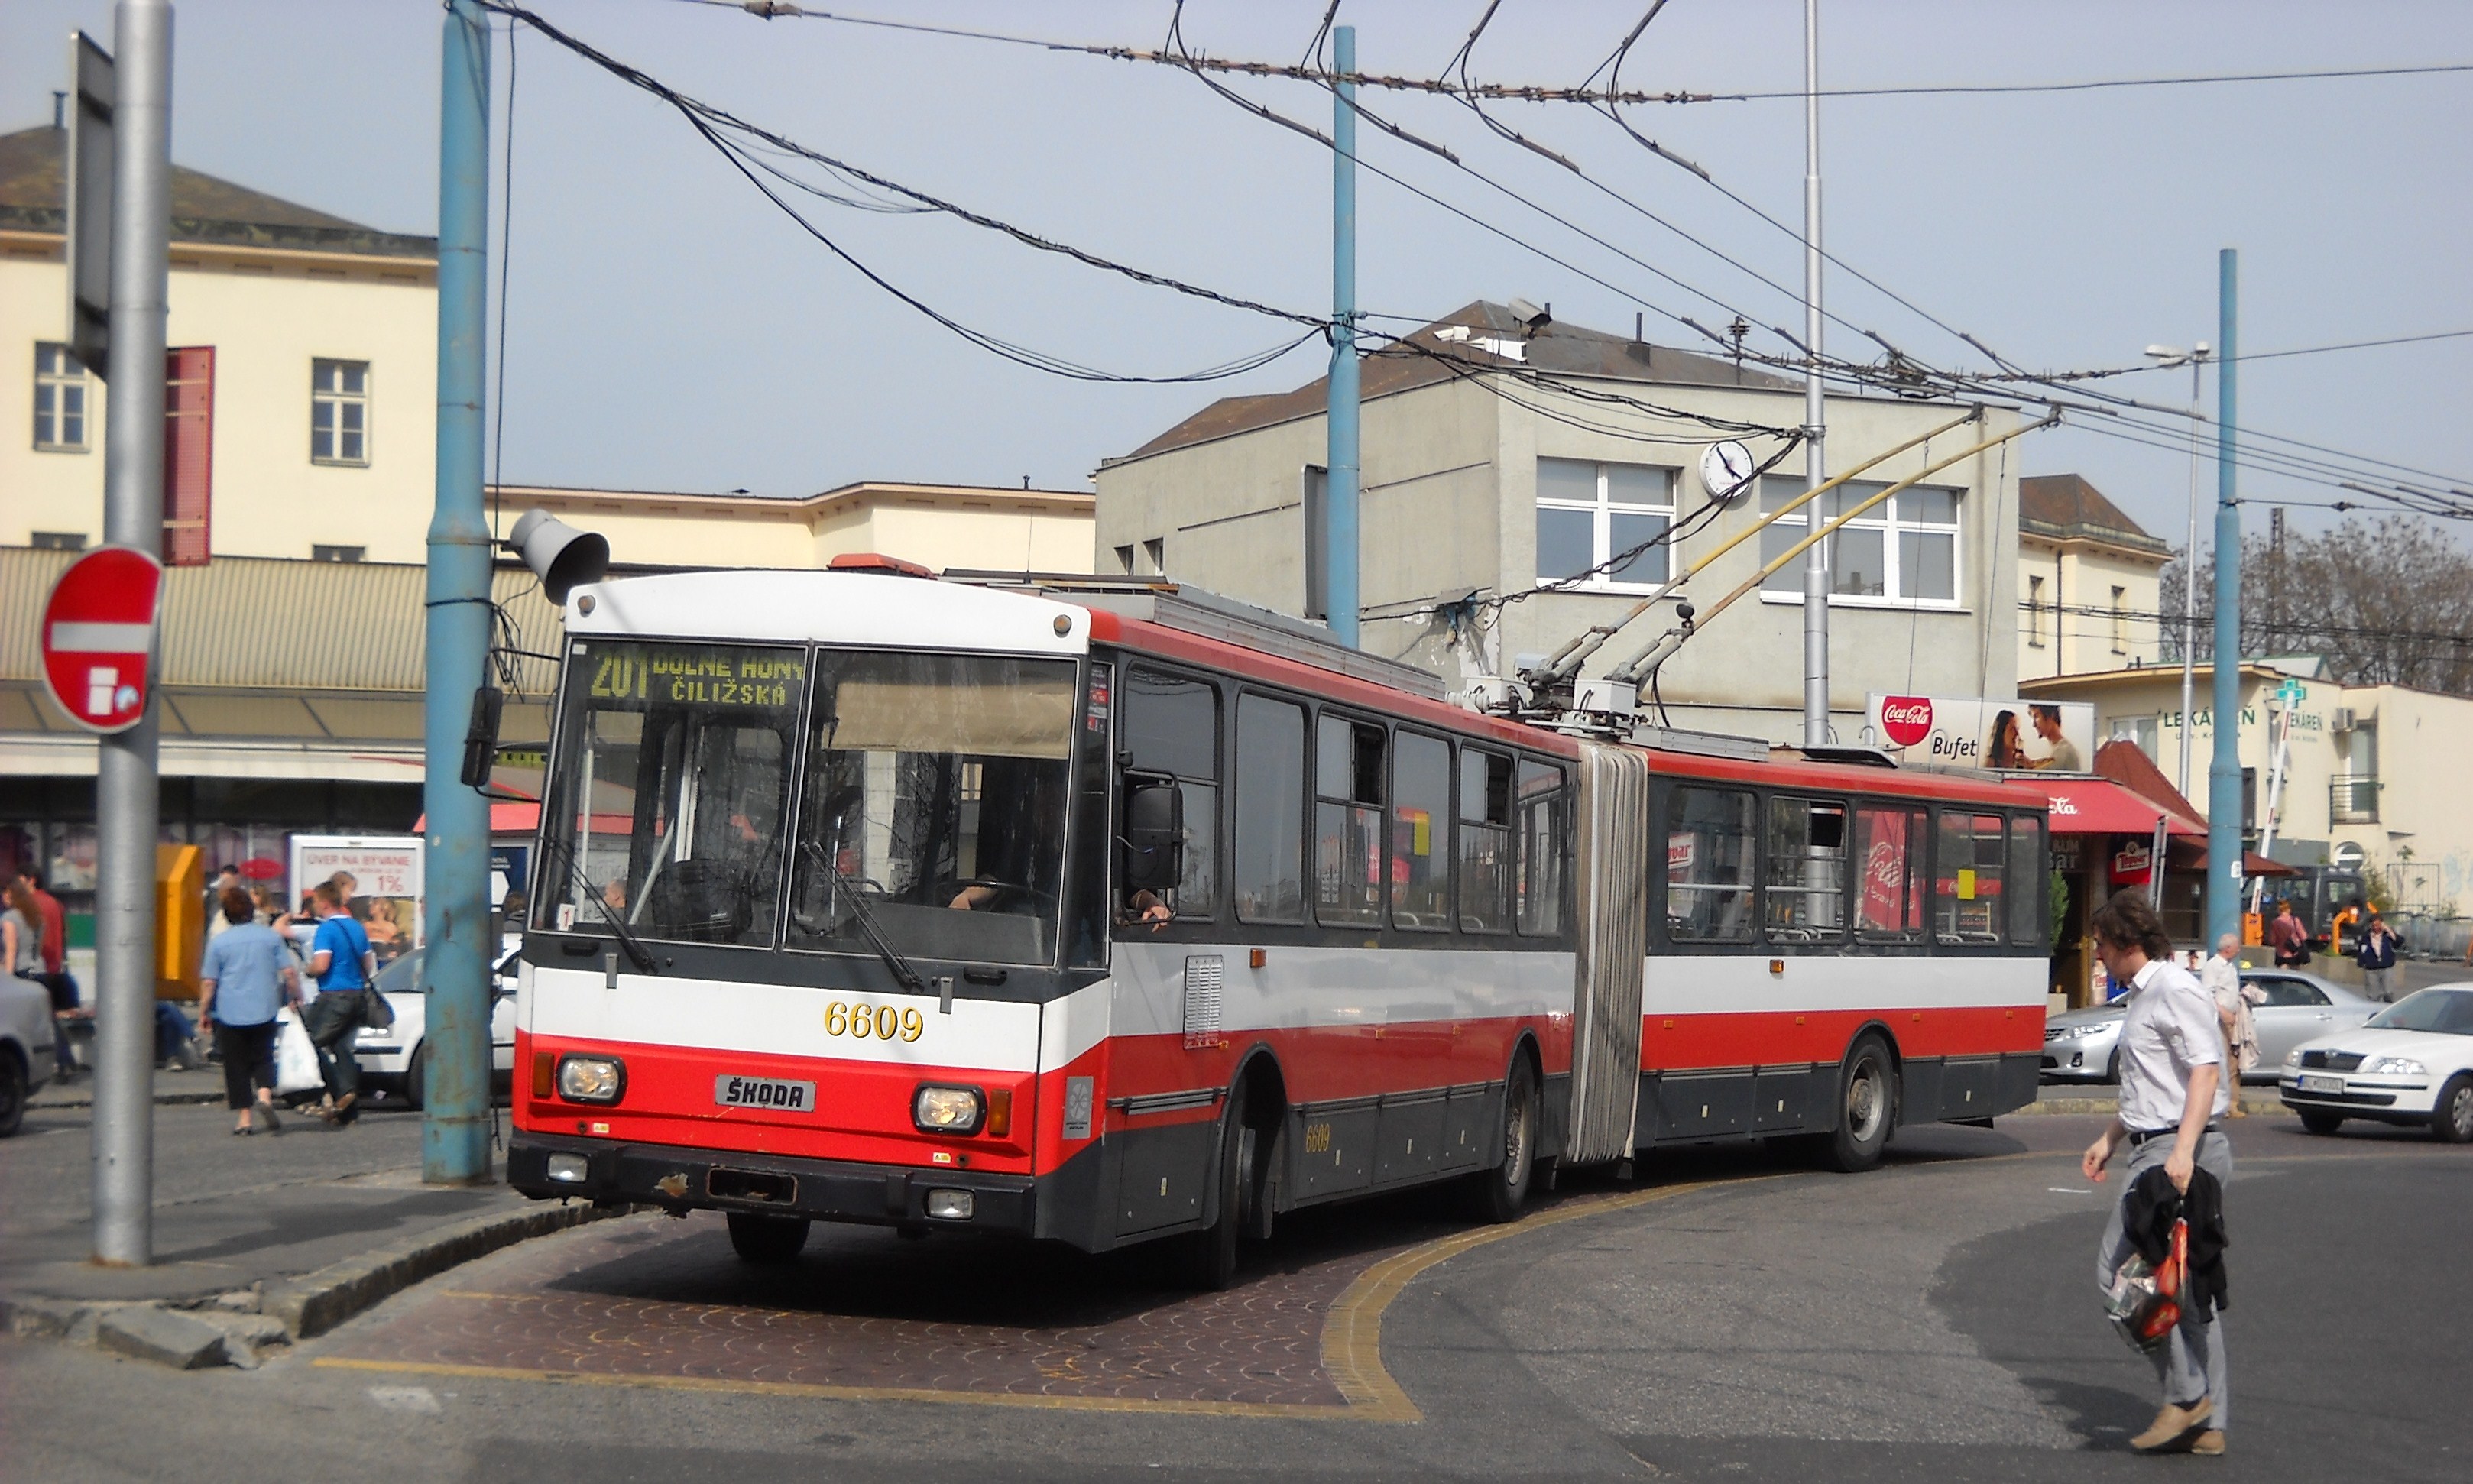 6609(vyř.)odpočívá na lince 201 v obratišti Hlavná stanica.Vůz byl vyřazen byl 15.12.2014